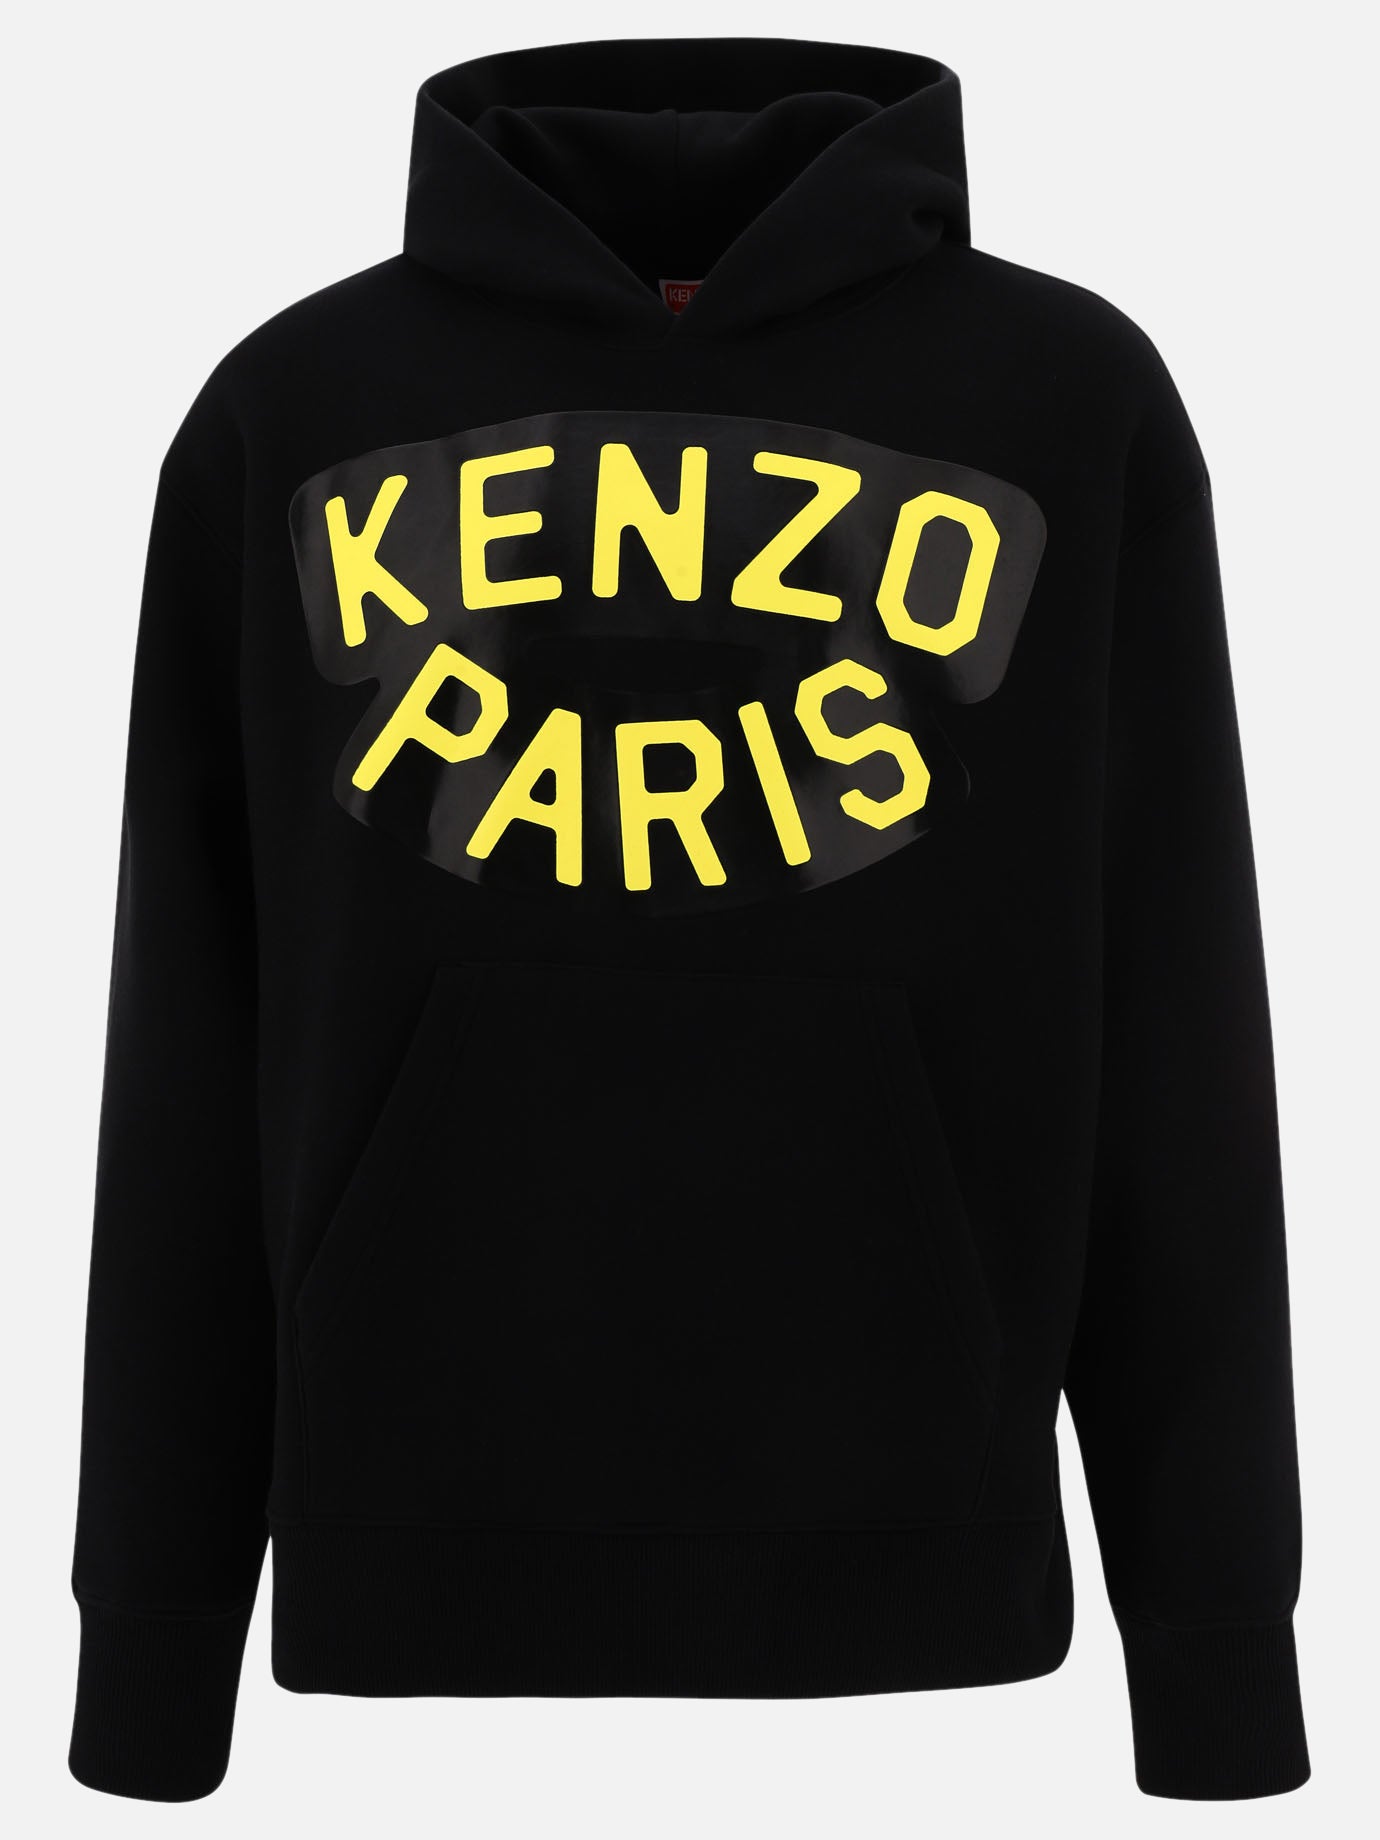 "Kenzo Sailor" hoodie